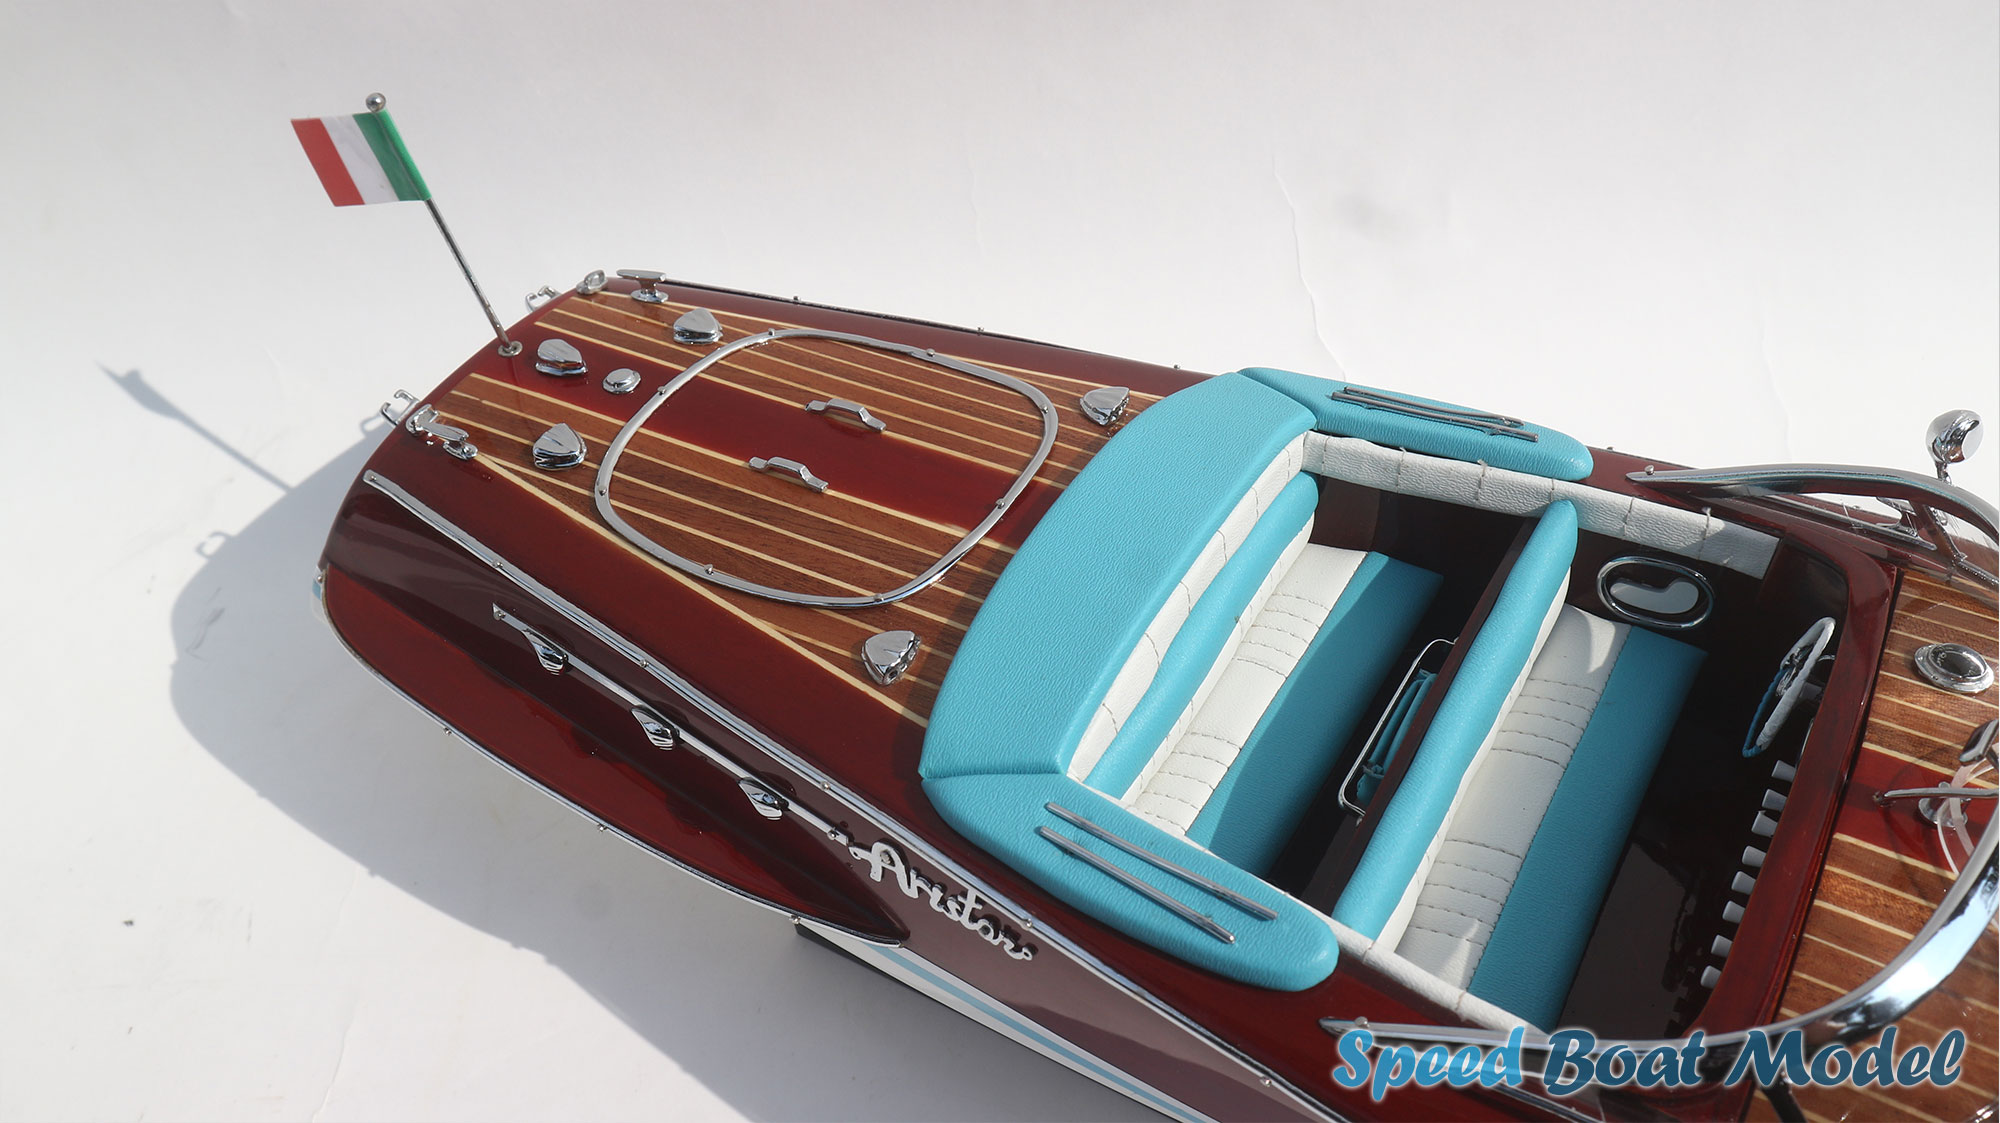 Riva Ariston Classic Speed Boat Model 20 Inches